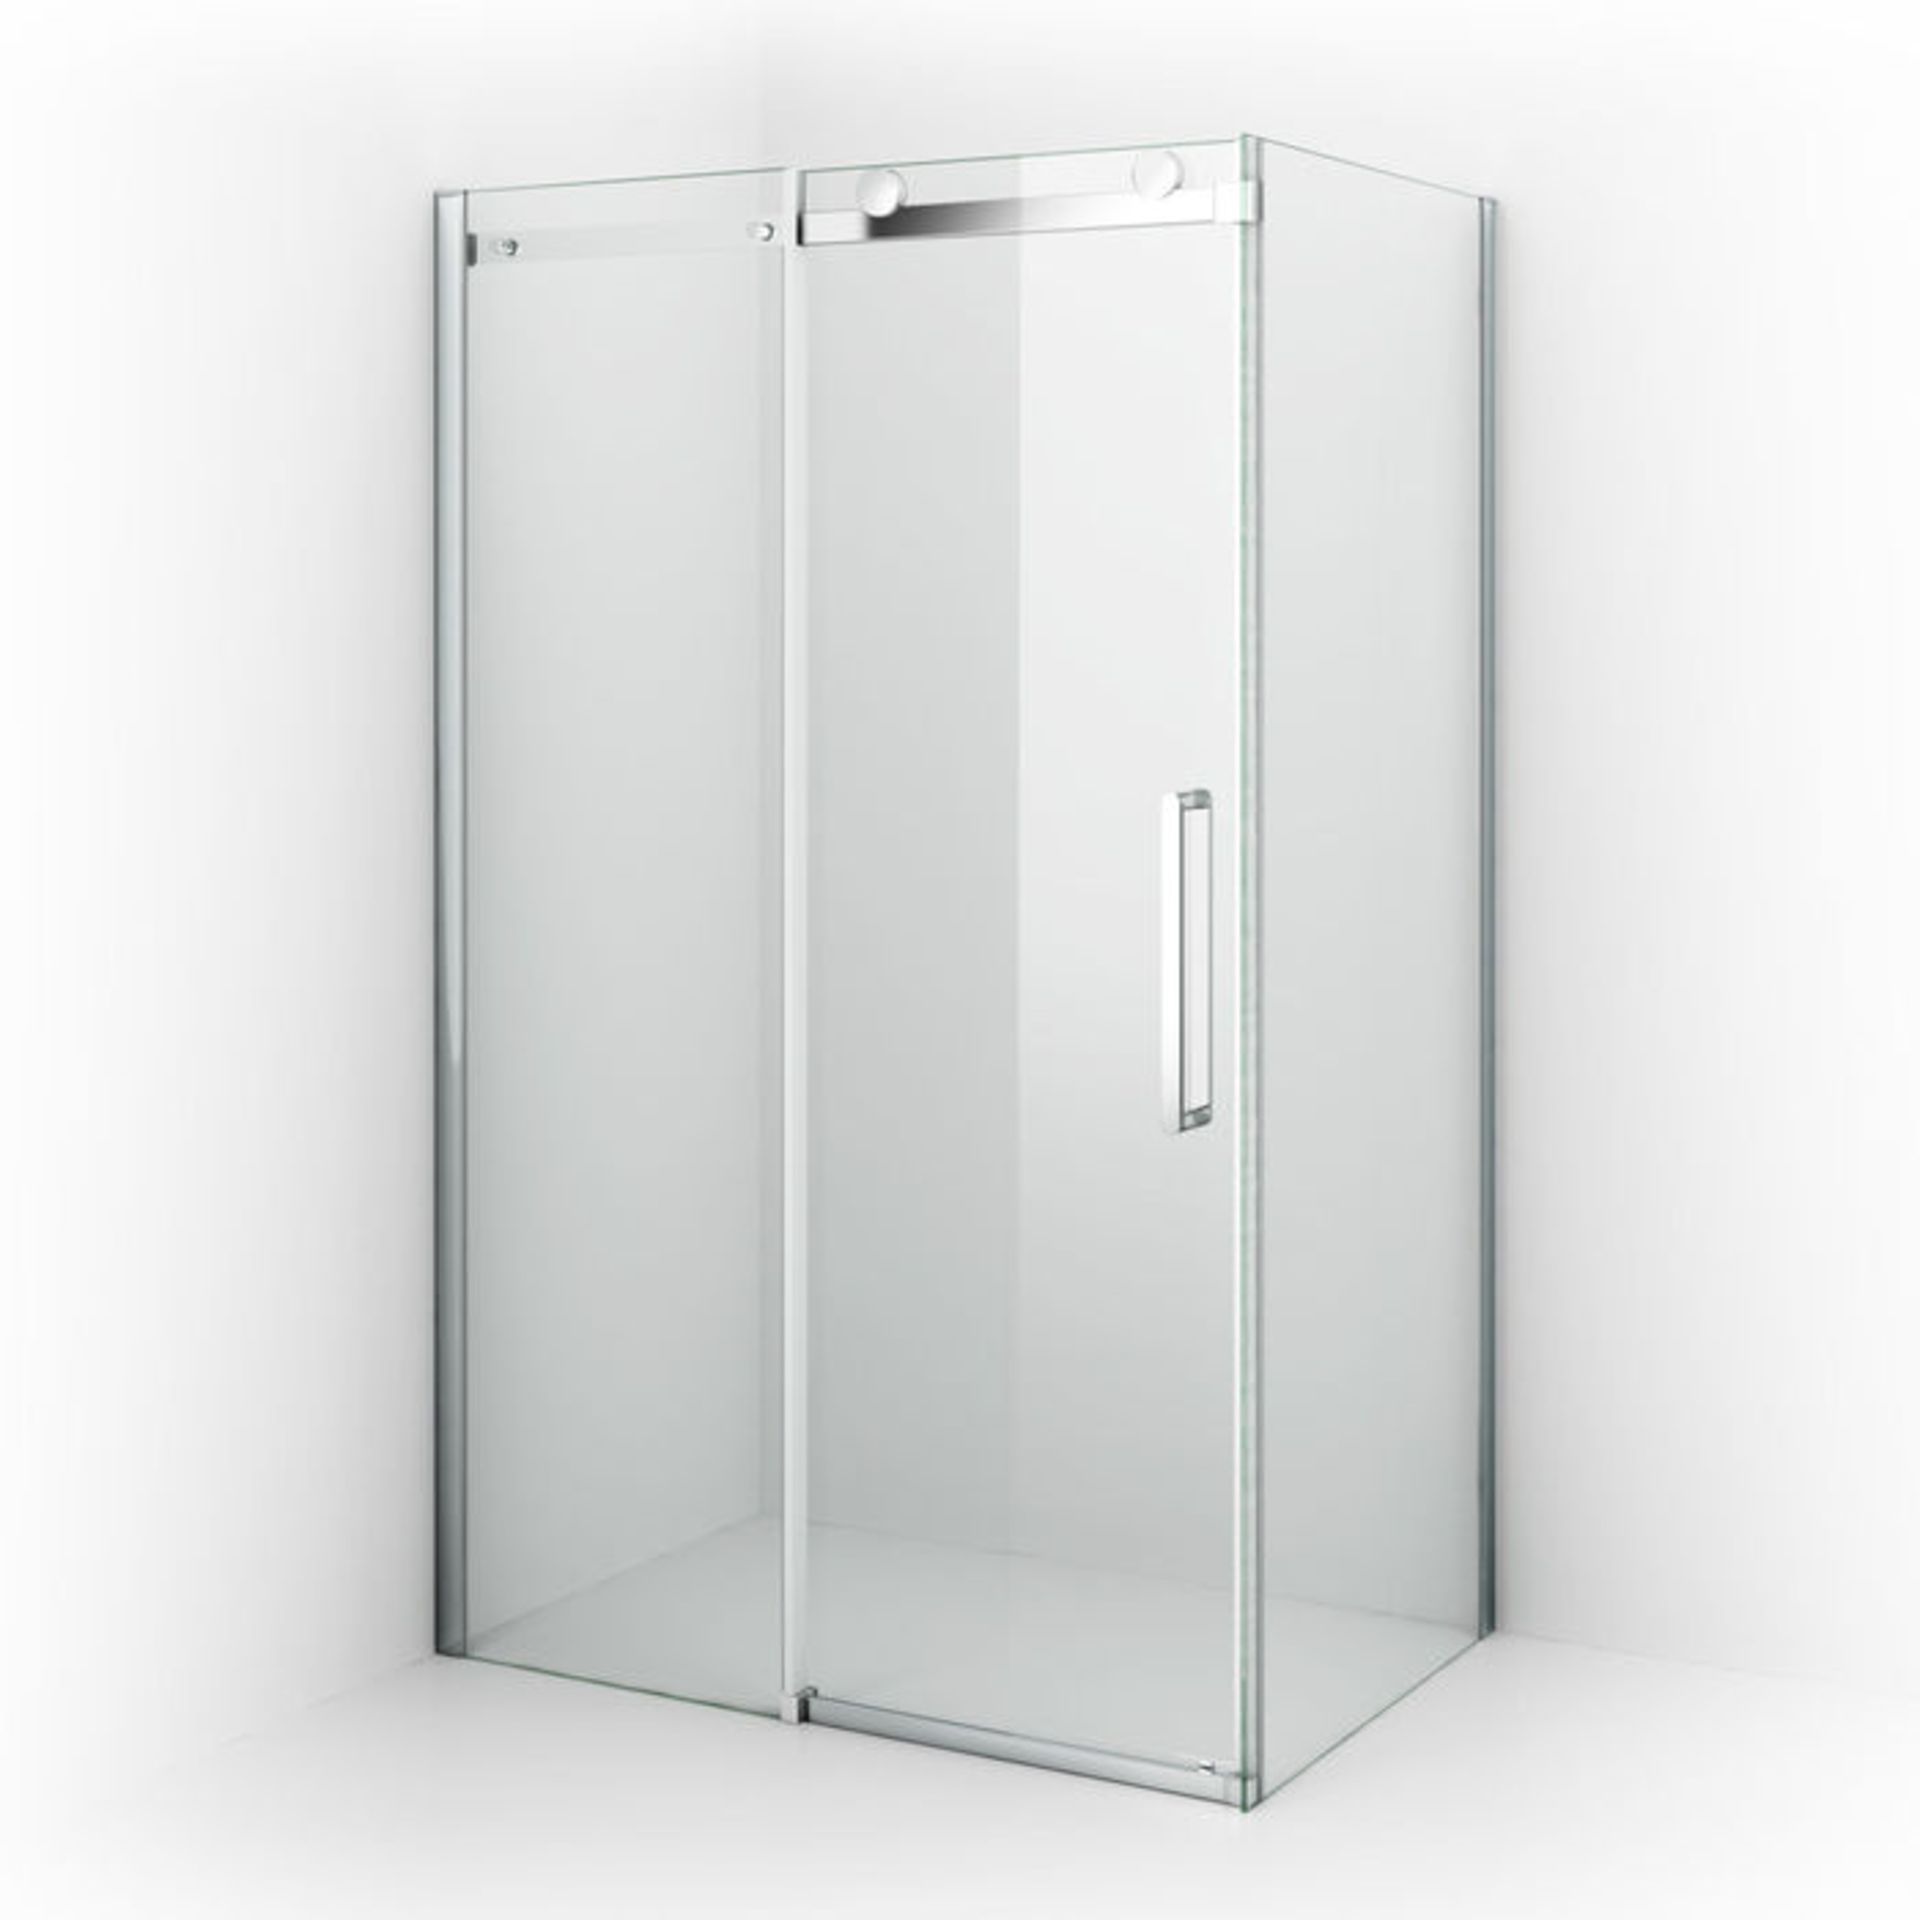 (A144) 1000x800mm - 8mm - Designer Frameless EasyClean Sliding Door Shower Enclosure. Rrp £443... - Image 5 of 5